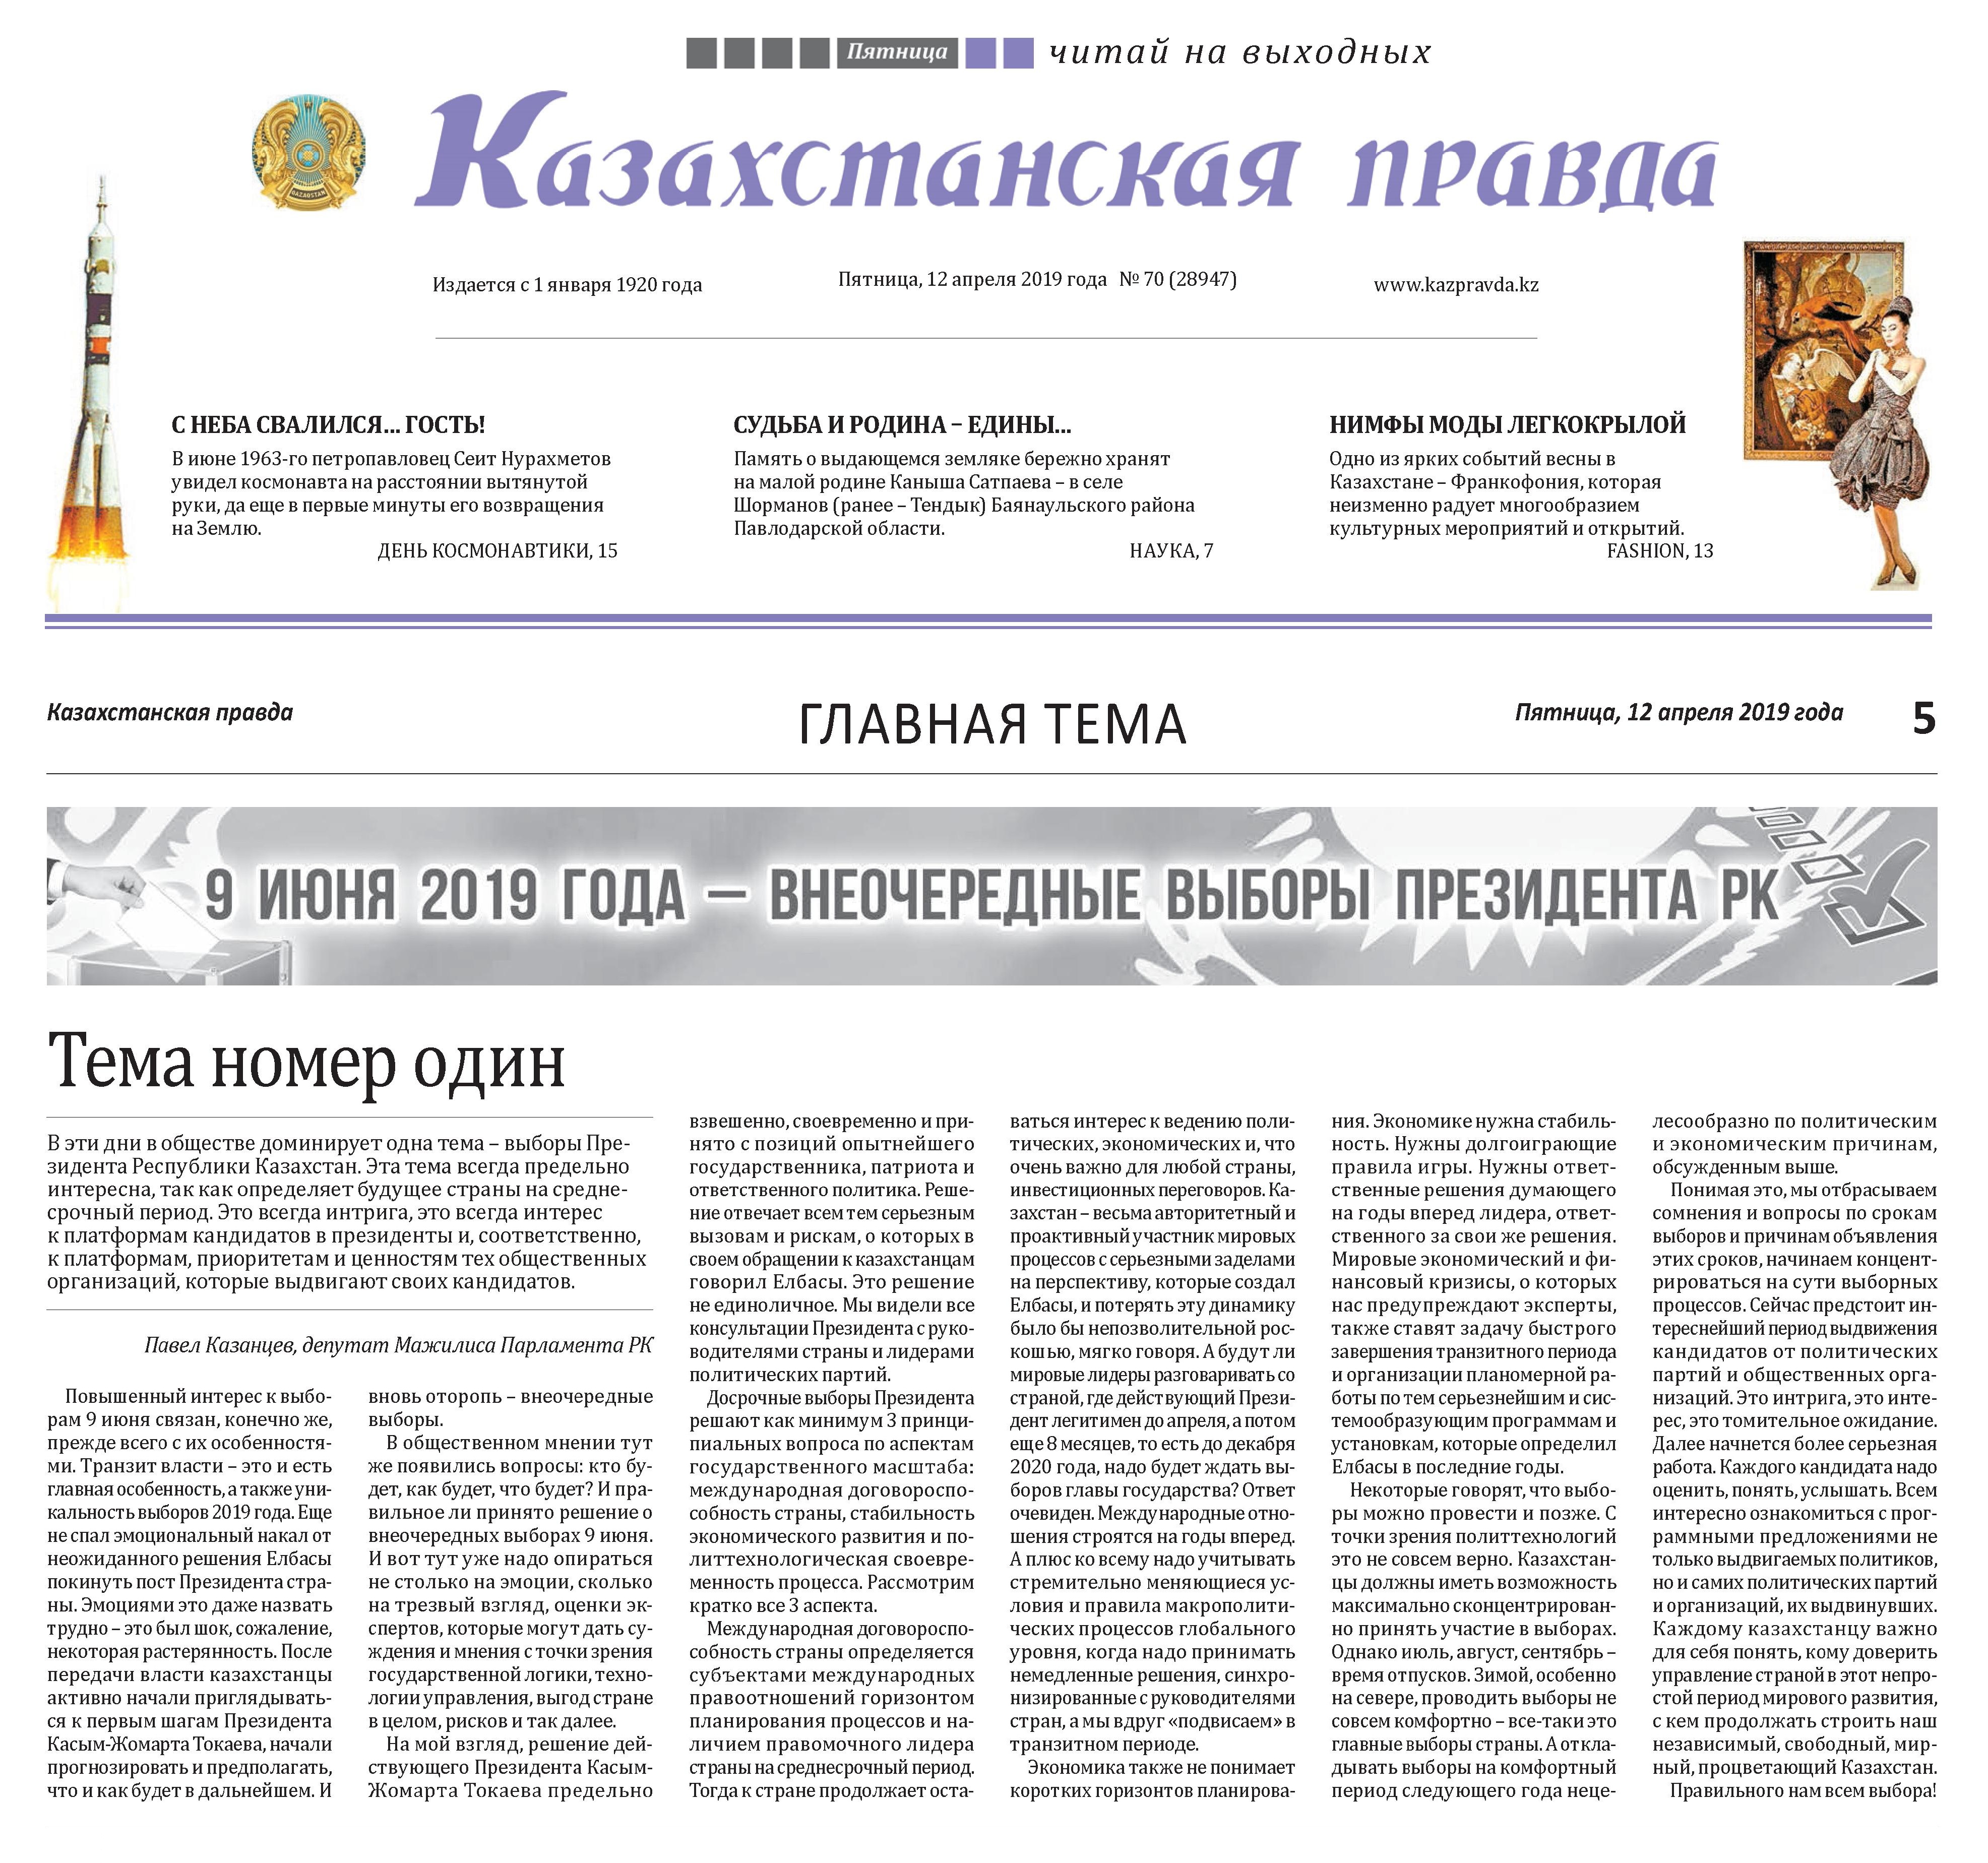 Опубликована статья "Тема номер один"  в республиканской газете "Казахстанская правда" от 12.04.2019 г.